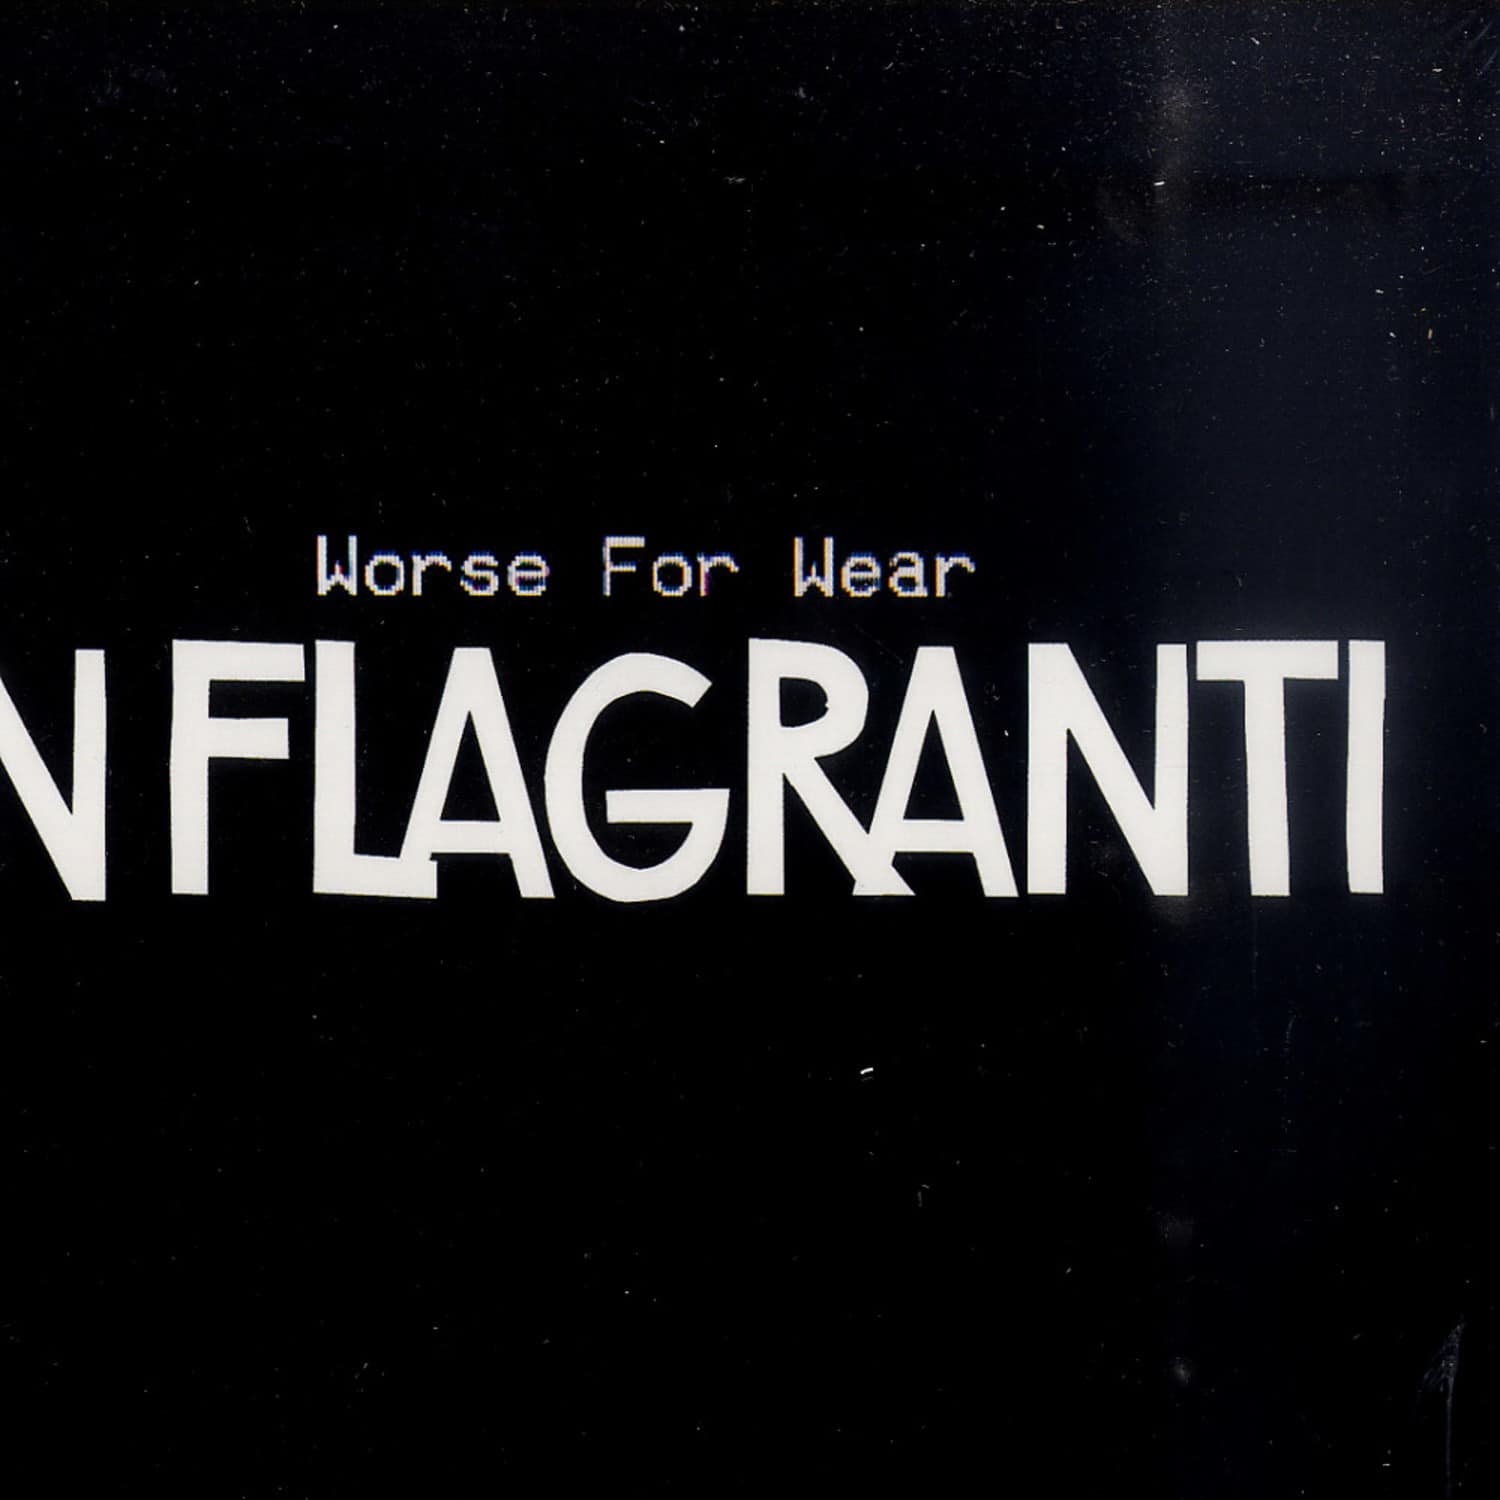 In Flagranti - WORSE FOR WEAR 